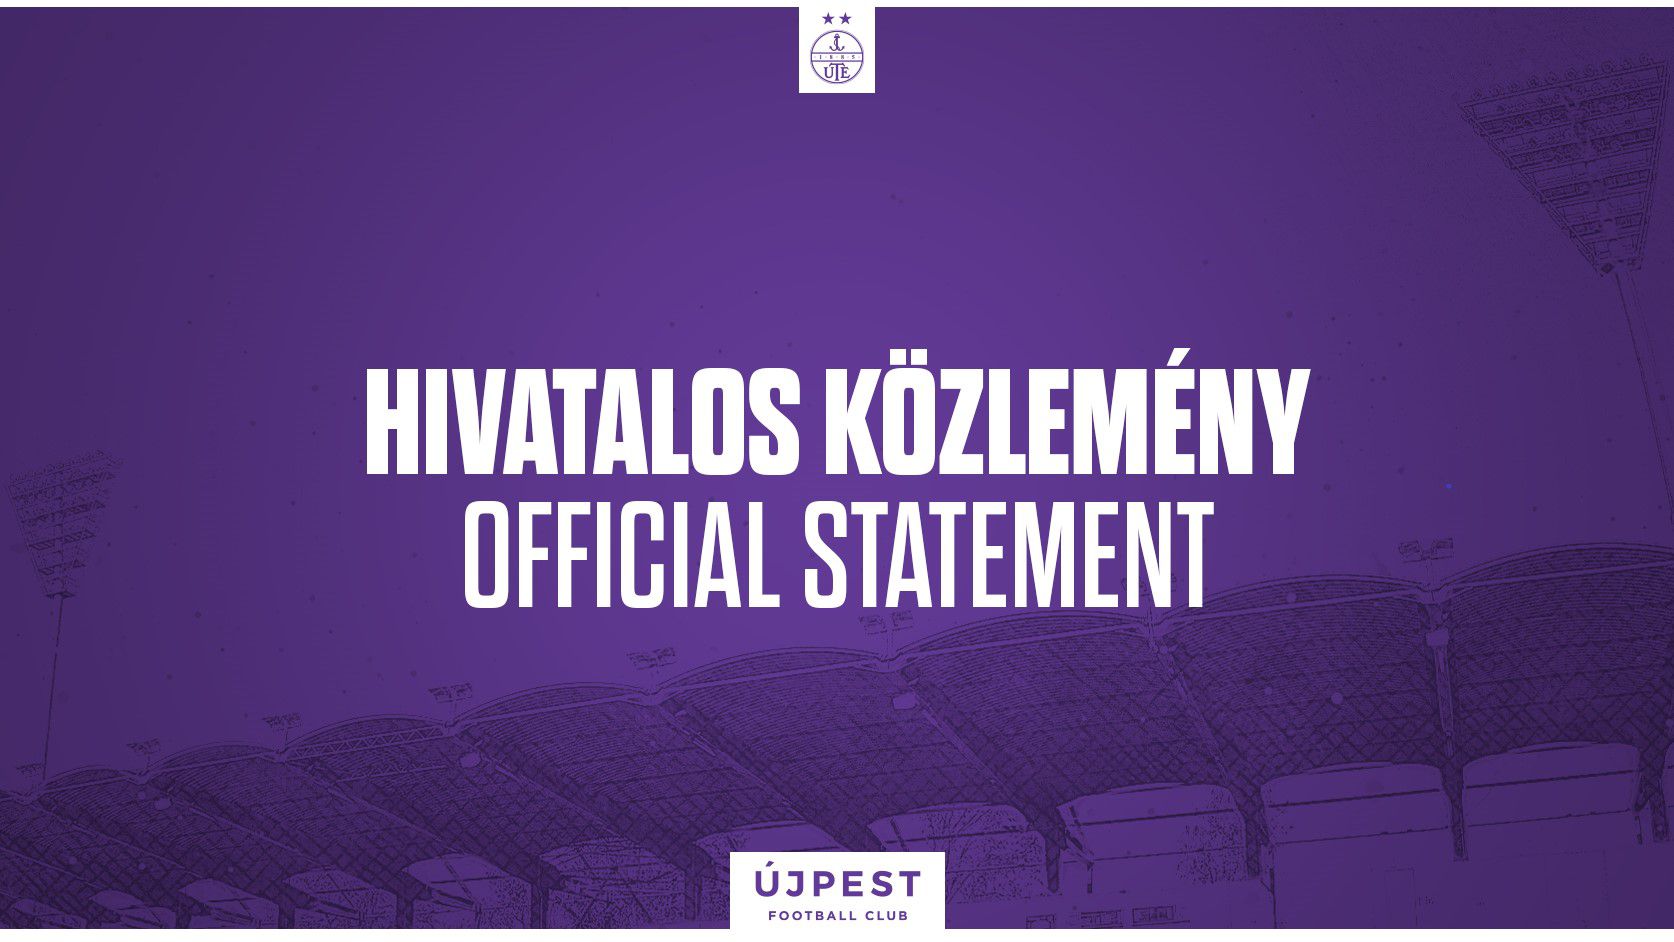 Három távozót is bejelentett az Újpest – hivatalos